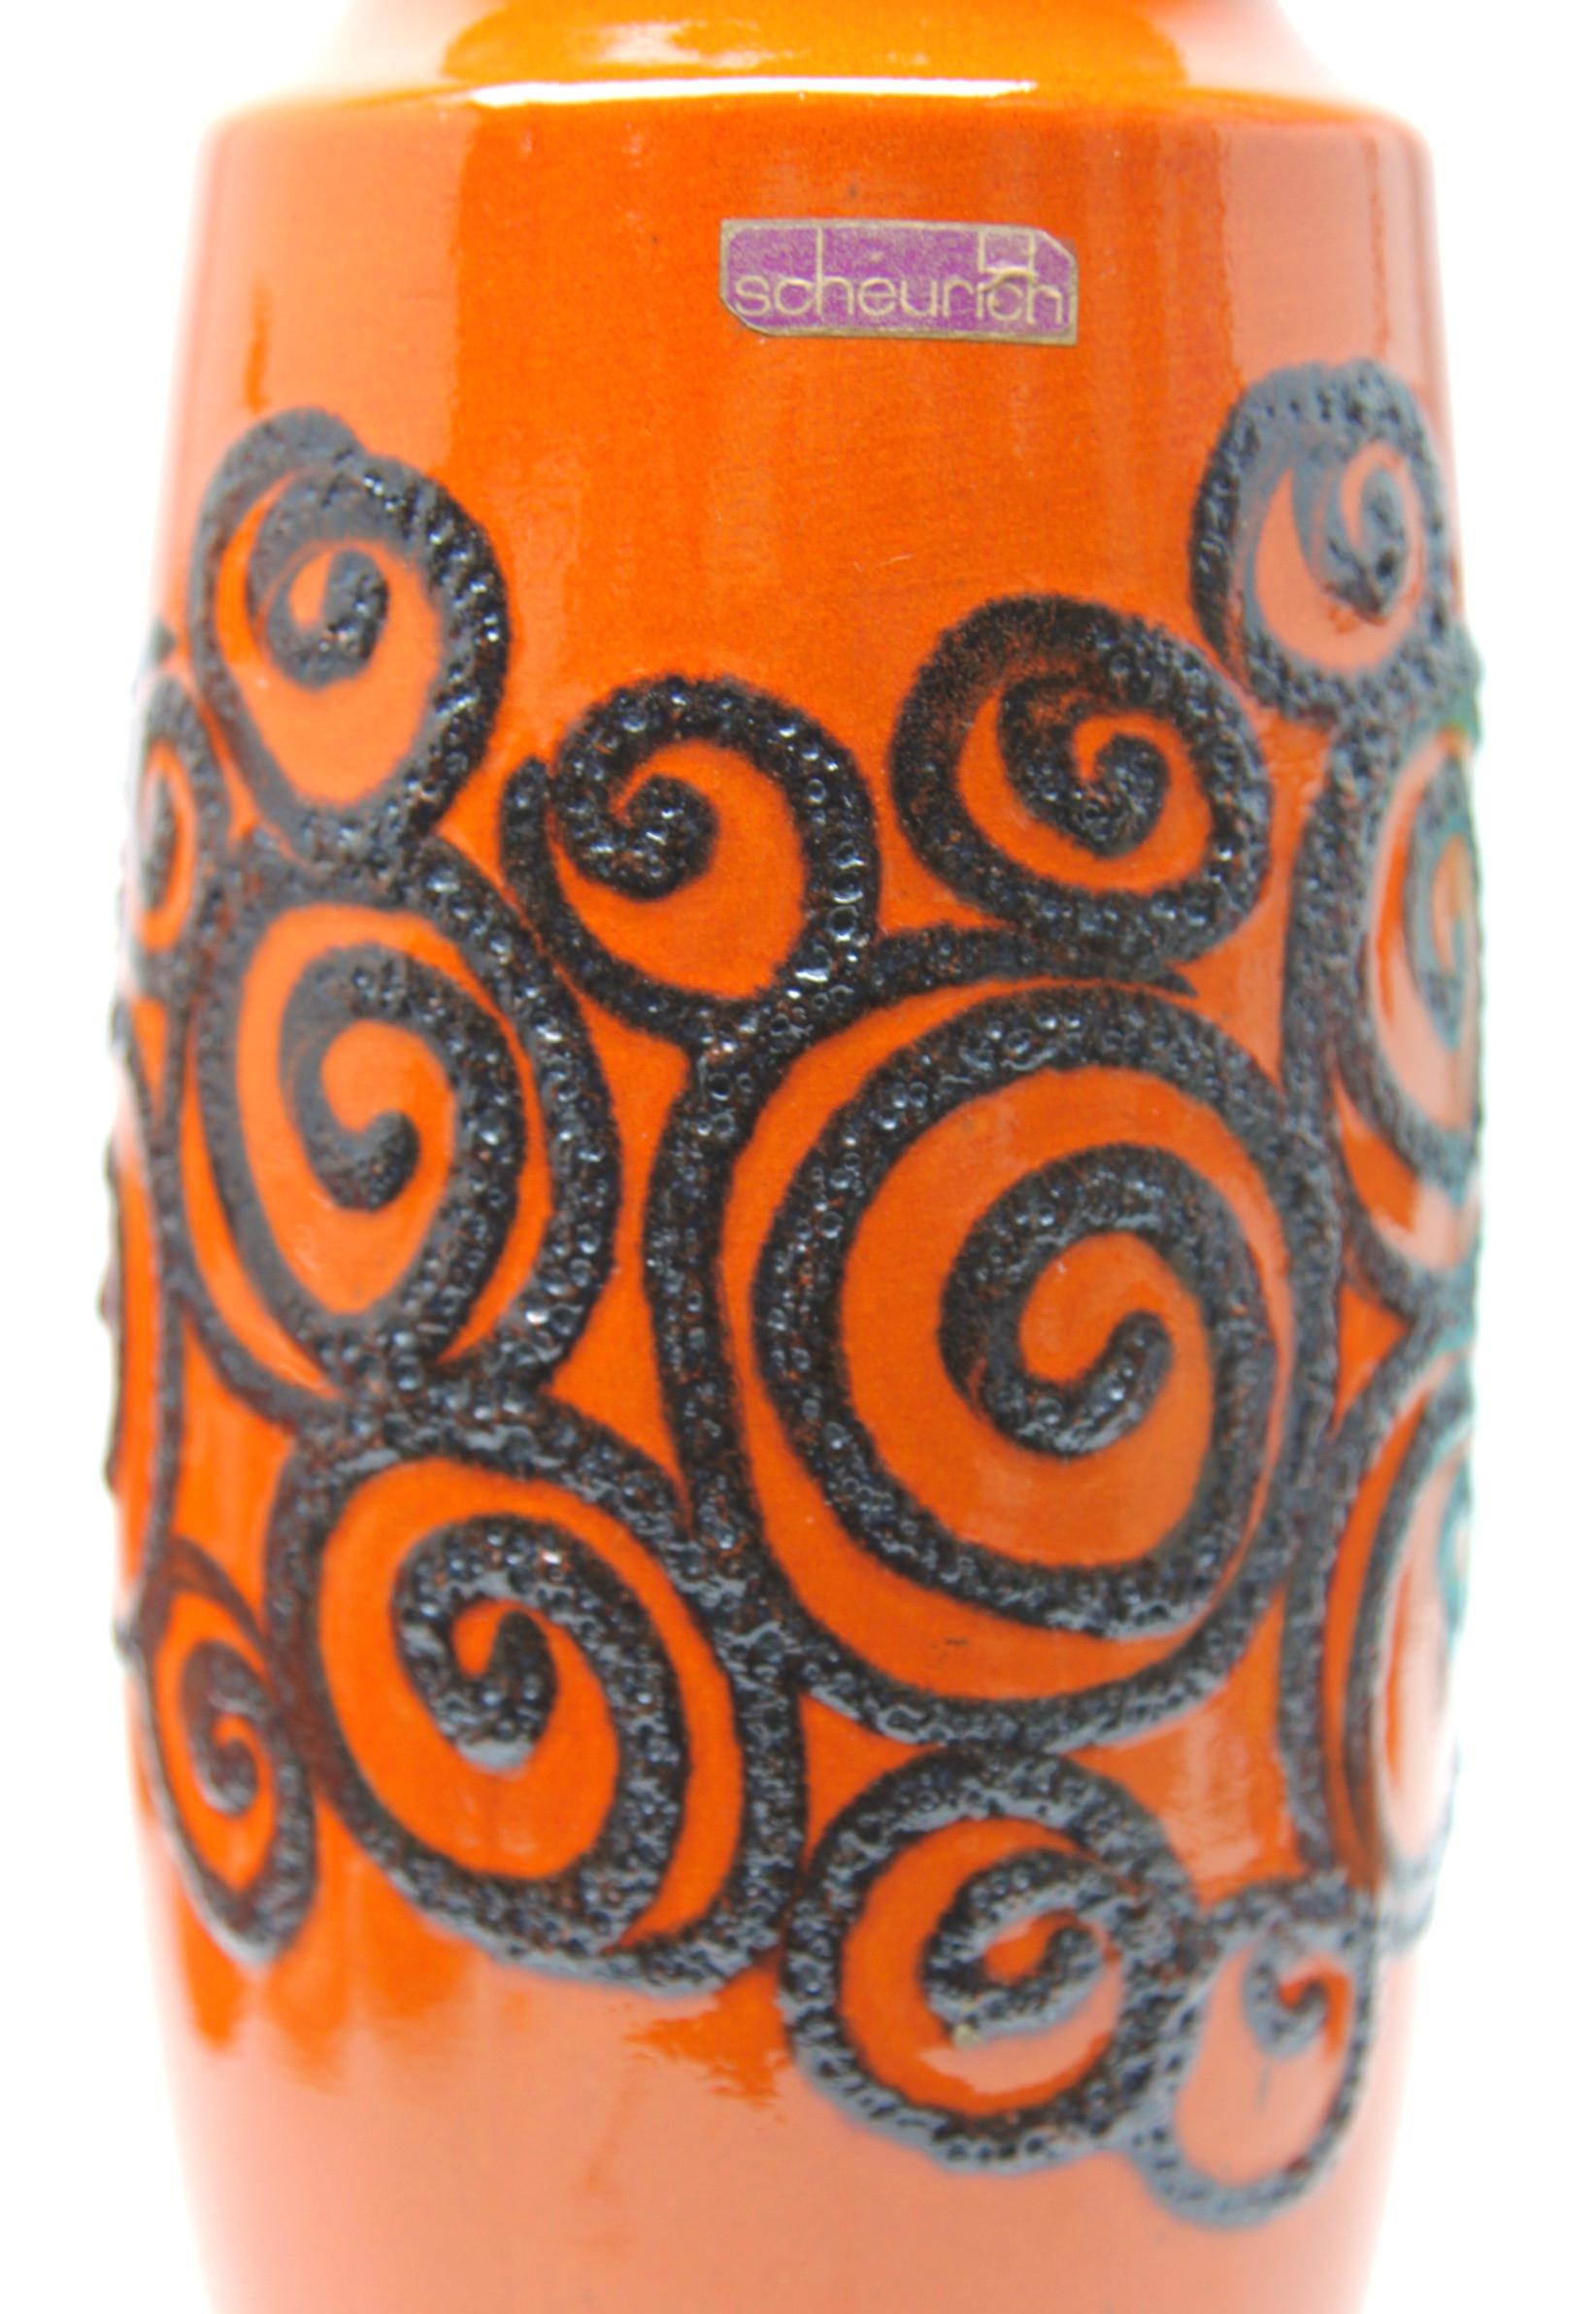 Vase en lave grasse, vintage Scheurich W-Germany 239-41, date de 1968, avec une glaçure brillante satinée en orange 'tango'.

Numéro imprimé sur la base. 239-41, W-Allemagne.
Glaçage de sentier en haut-relief d'inspiration